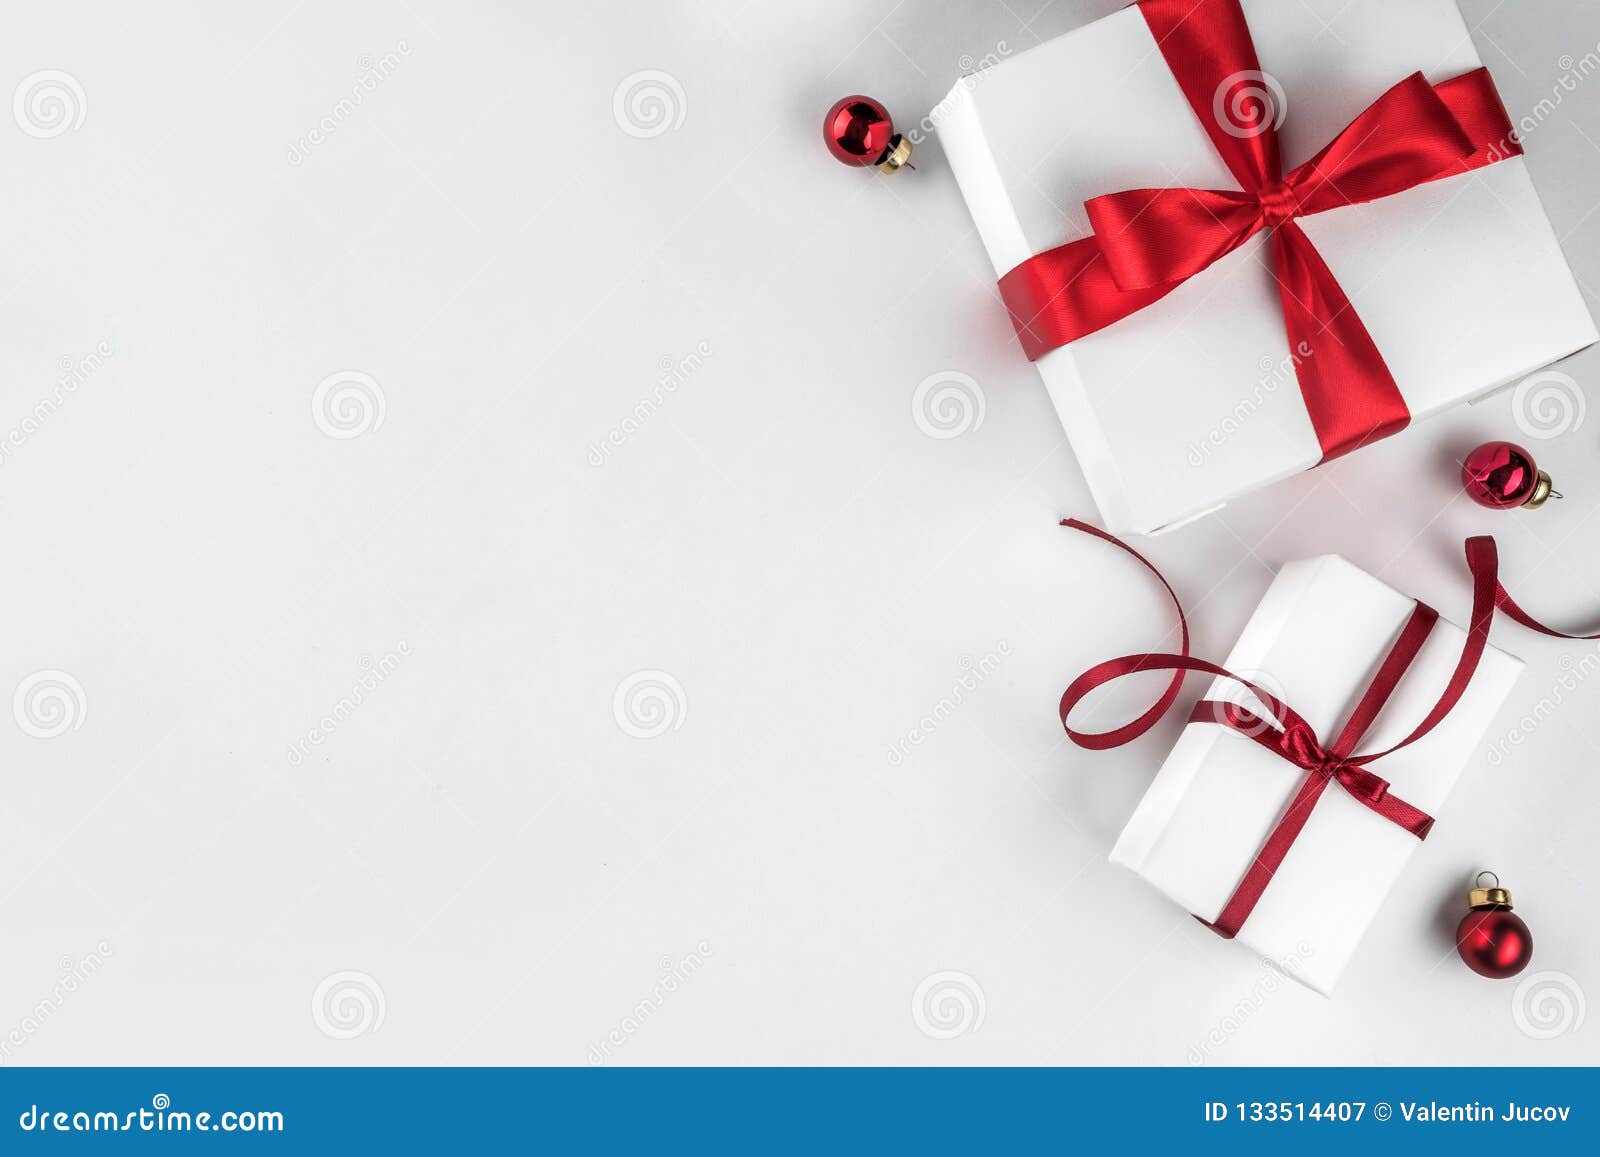 Mùa Giáng sinh sắp đến, bạn đã chuẩn bị những món quà đầy yêu thương cho người thân và bạn bè chưa? Hộp quà Giáng sinh là lựa chọn hoàn hảo để gửi gắm thông điệp yêu thương đến mọi người. Hãy xem hình ảnh các chiếc hộp quà được trang trí đẹp mắt để có thêm ý tưởng cho món quà của mình nhé!